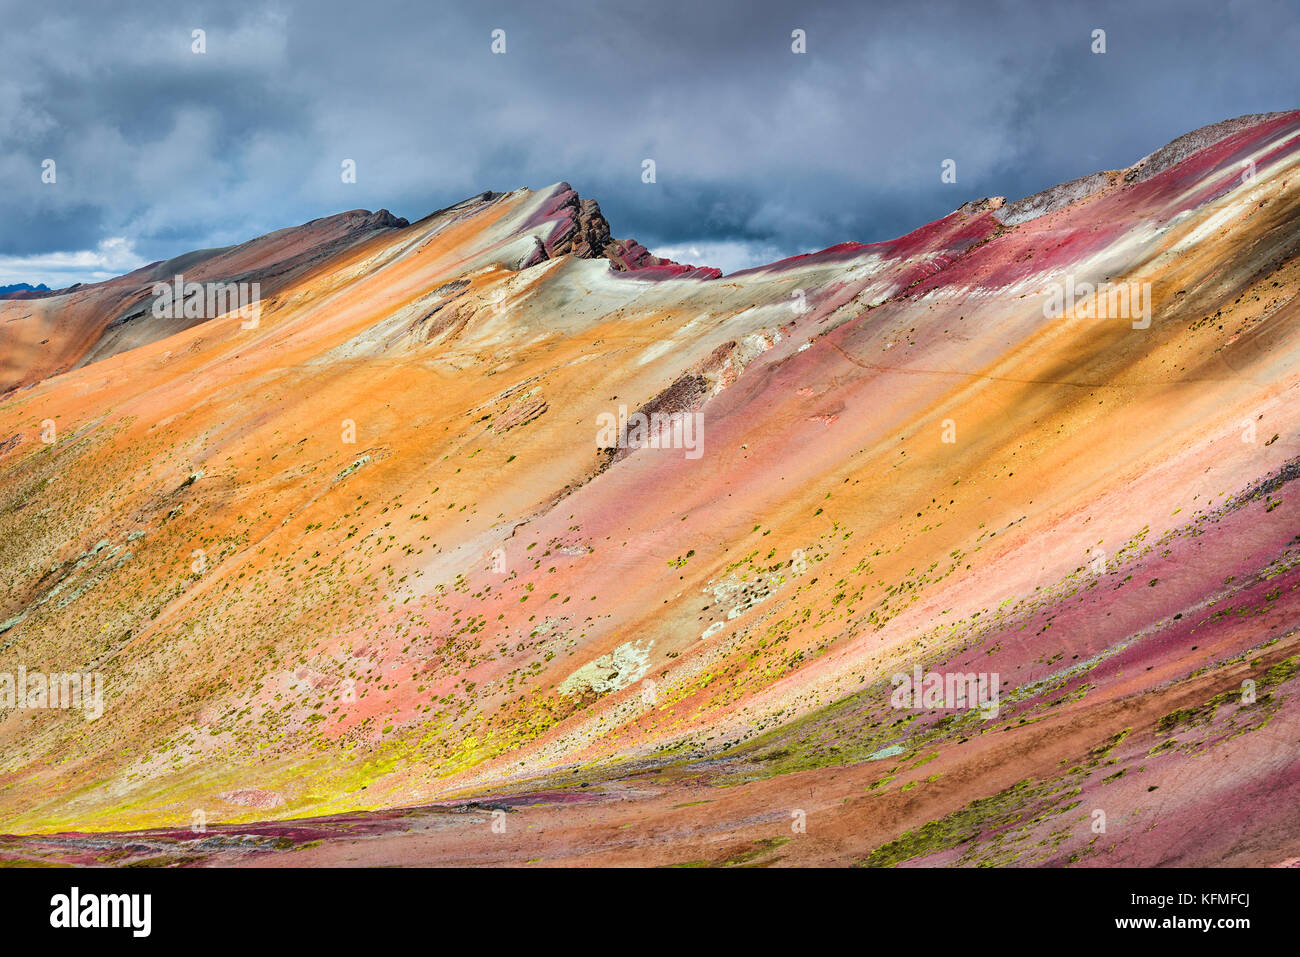 Vinicunca, Peru - Winicunca Rainbow Mountain (5200 m) in den Anden, Cordillera de los Andes, Cusco Region in Südamerika. Stockfoto